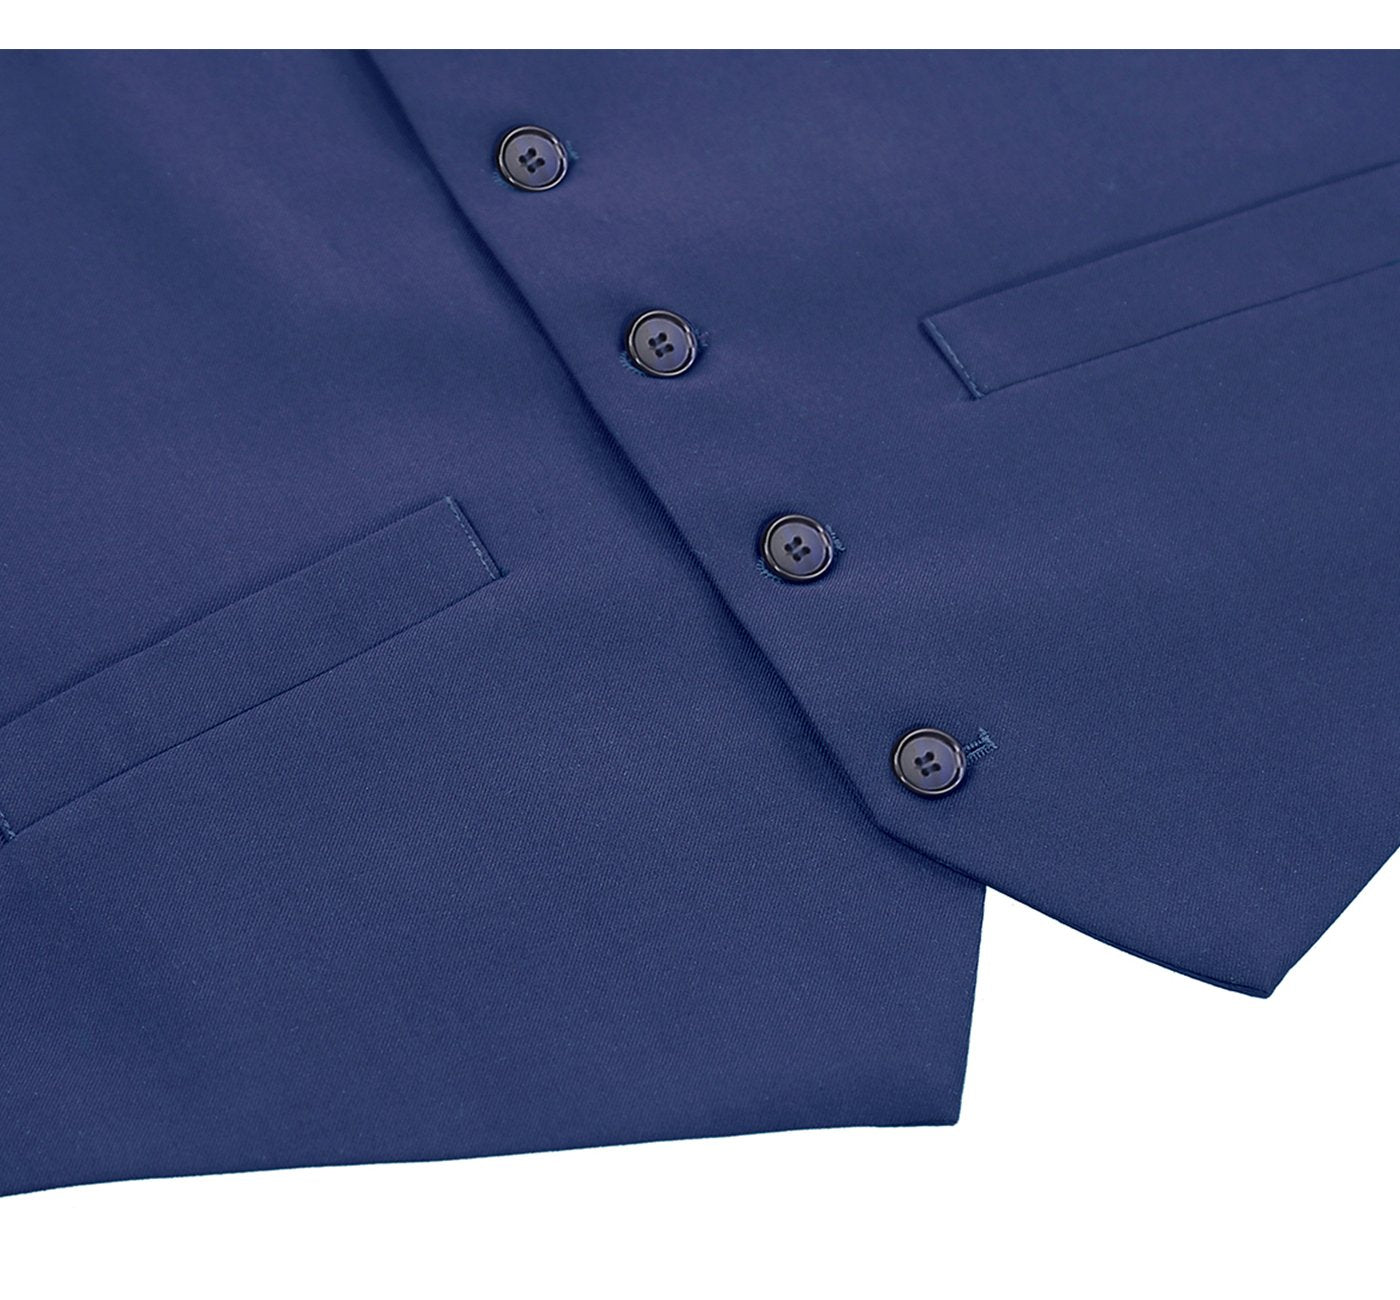 201-20 Men's Royal Blue Classic Fit Suit Separate Vest